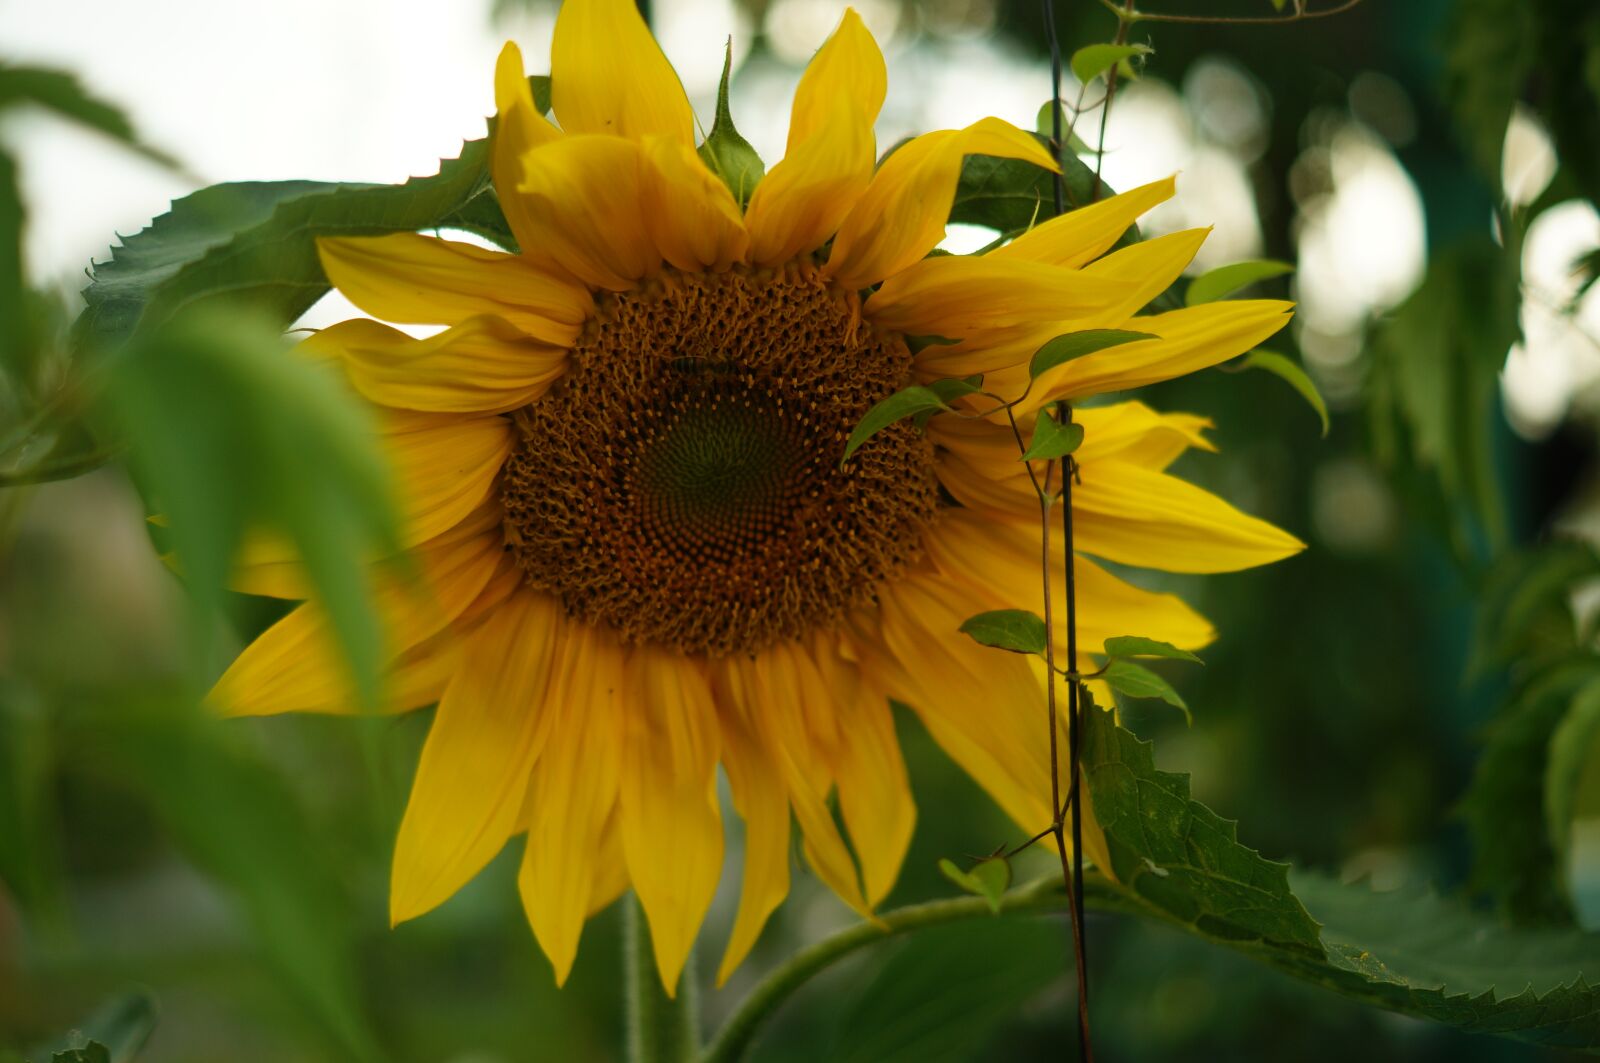 Sony DT 50mm F1.8 SAM sample photo. Sunflower, summer, flower photography